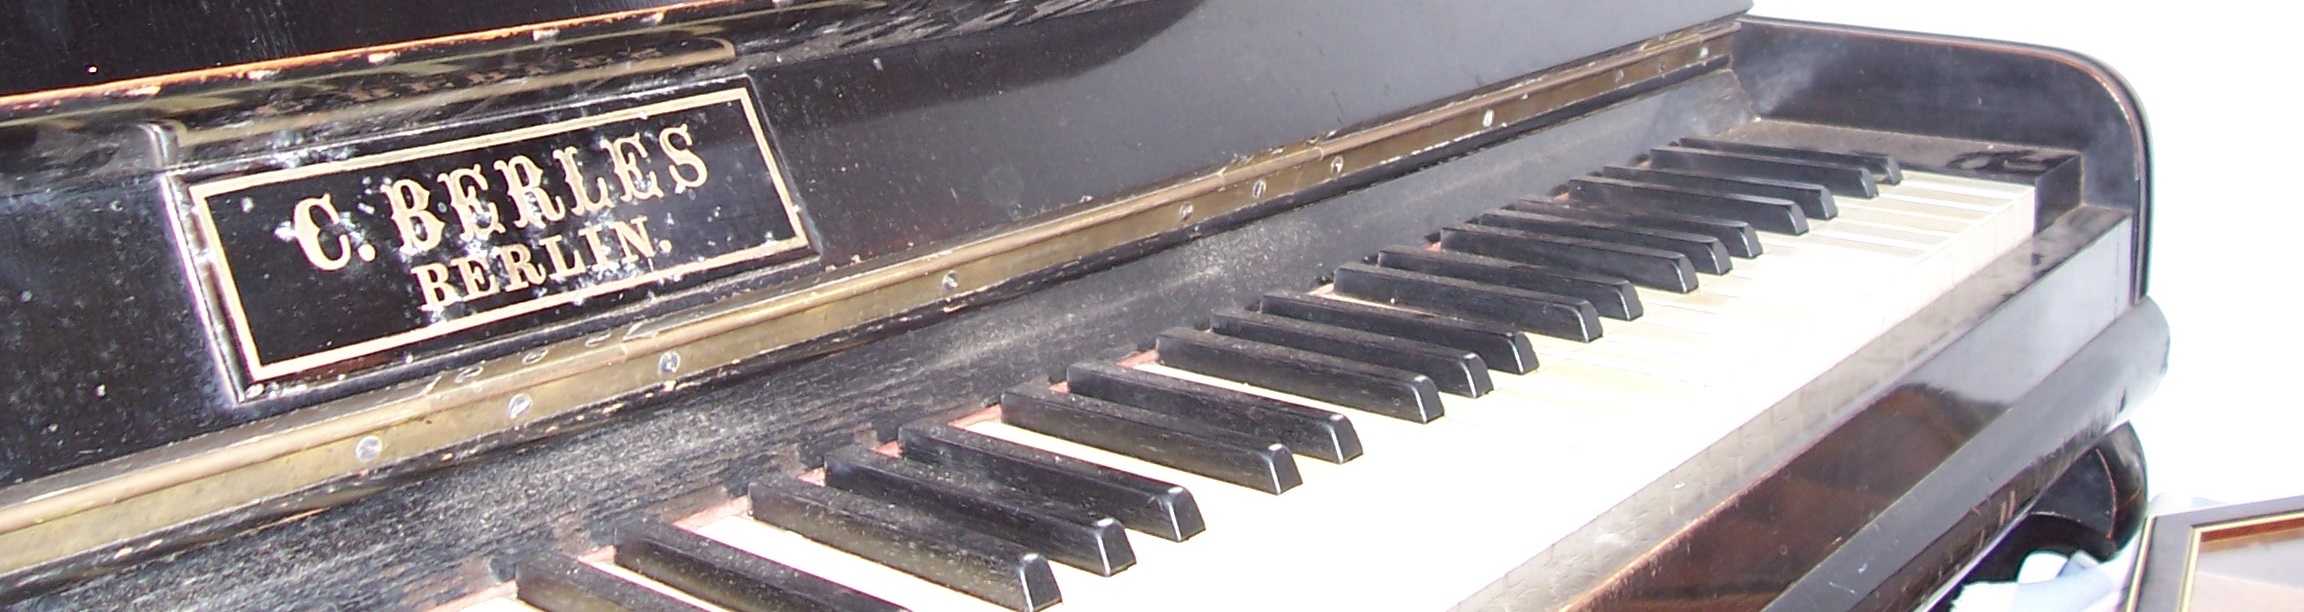 Das Klavier von Ernst Lang